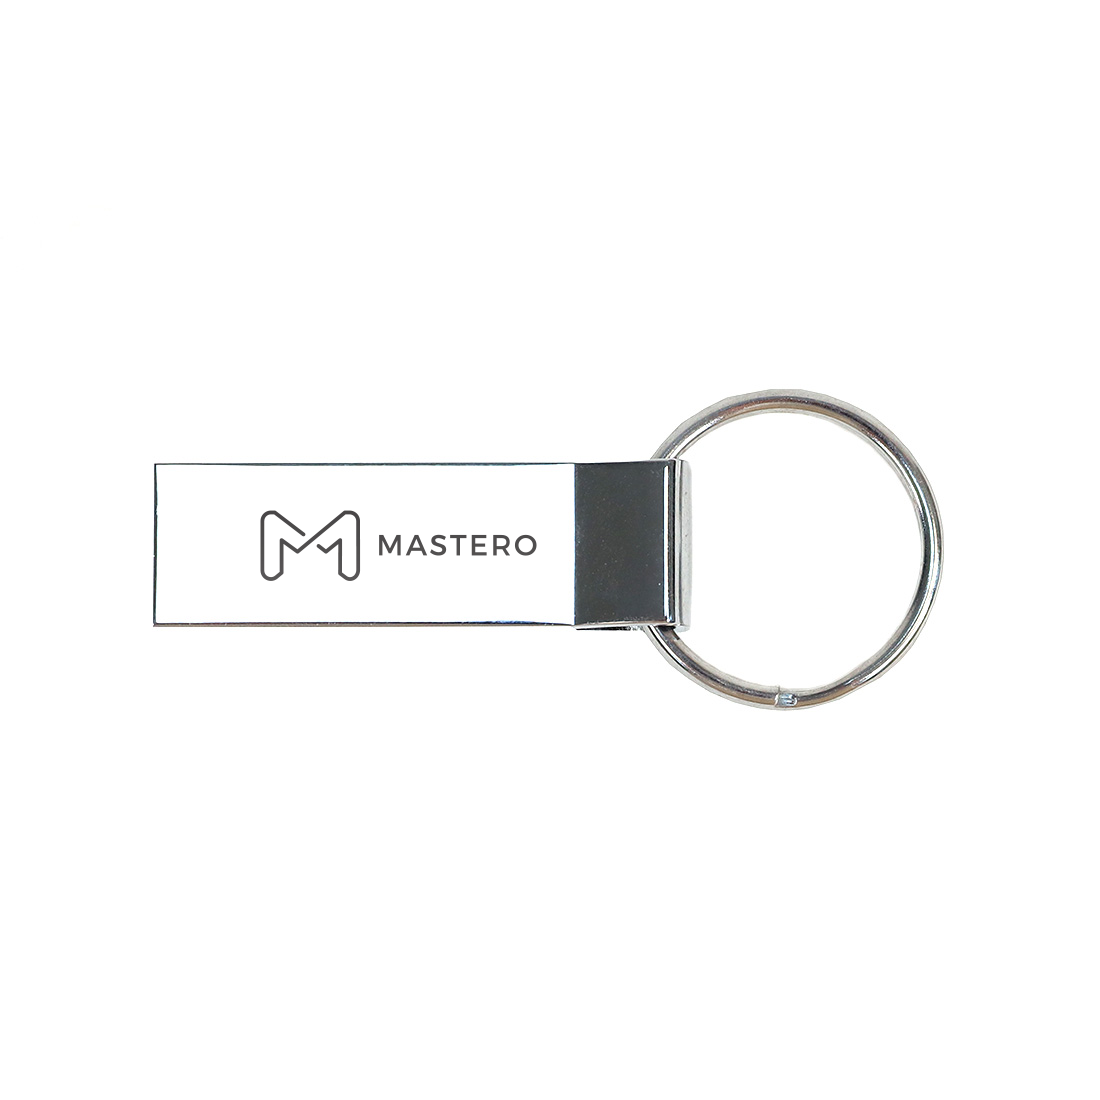 Флешка 256Gb USB 3.0 Mastero MS1, серебристый (MS1-256GB-SL), цвет серебро